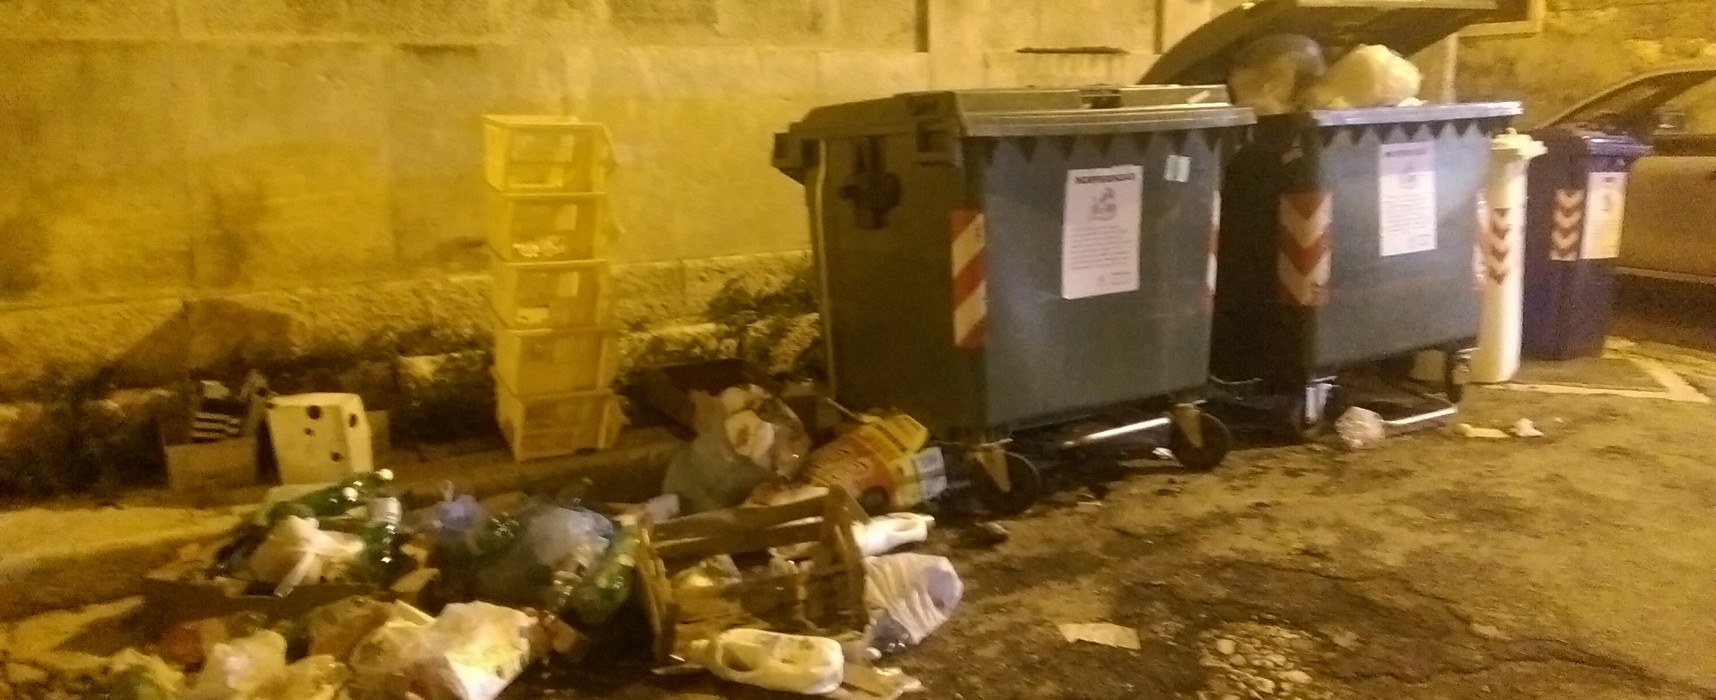 Rifiuti abbandonati per terra in via Genova, ci sarebbe bisogno di un cassonetto per la raccolta plastica